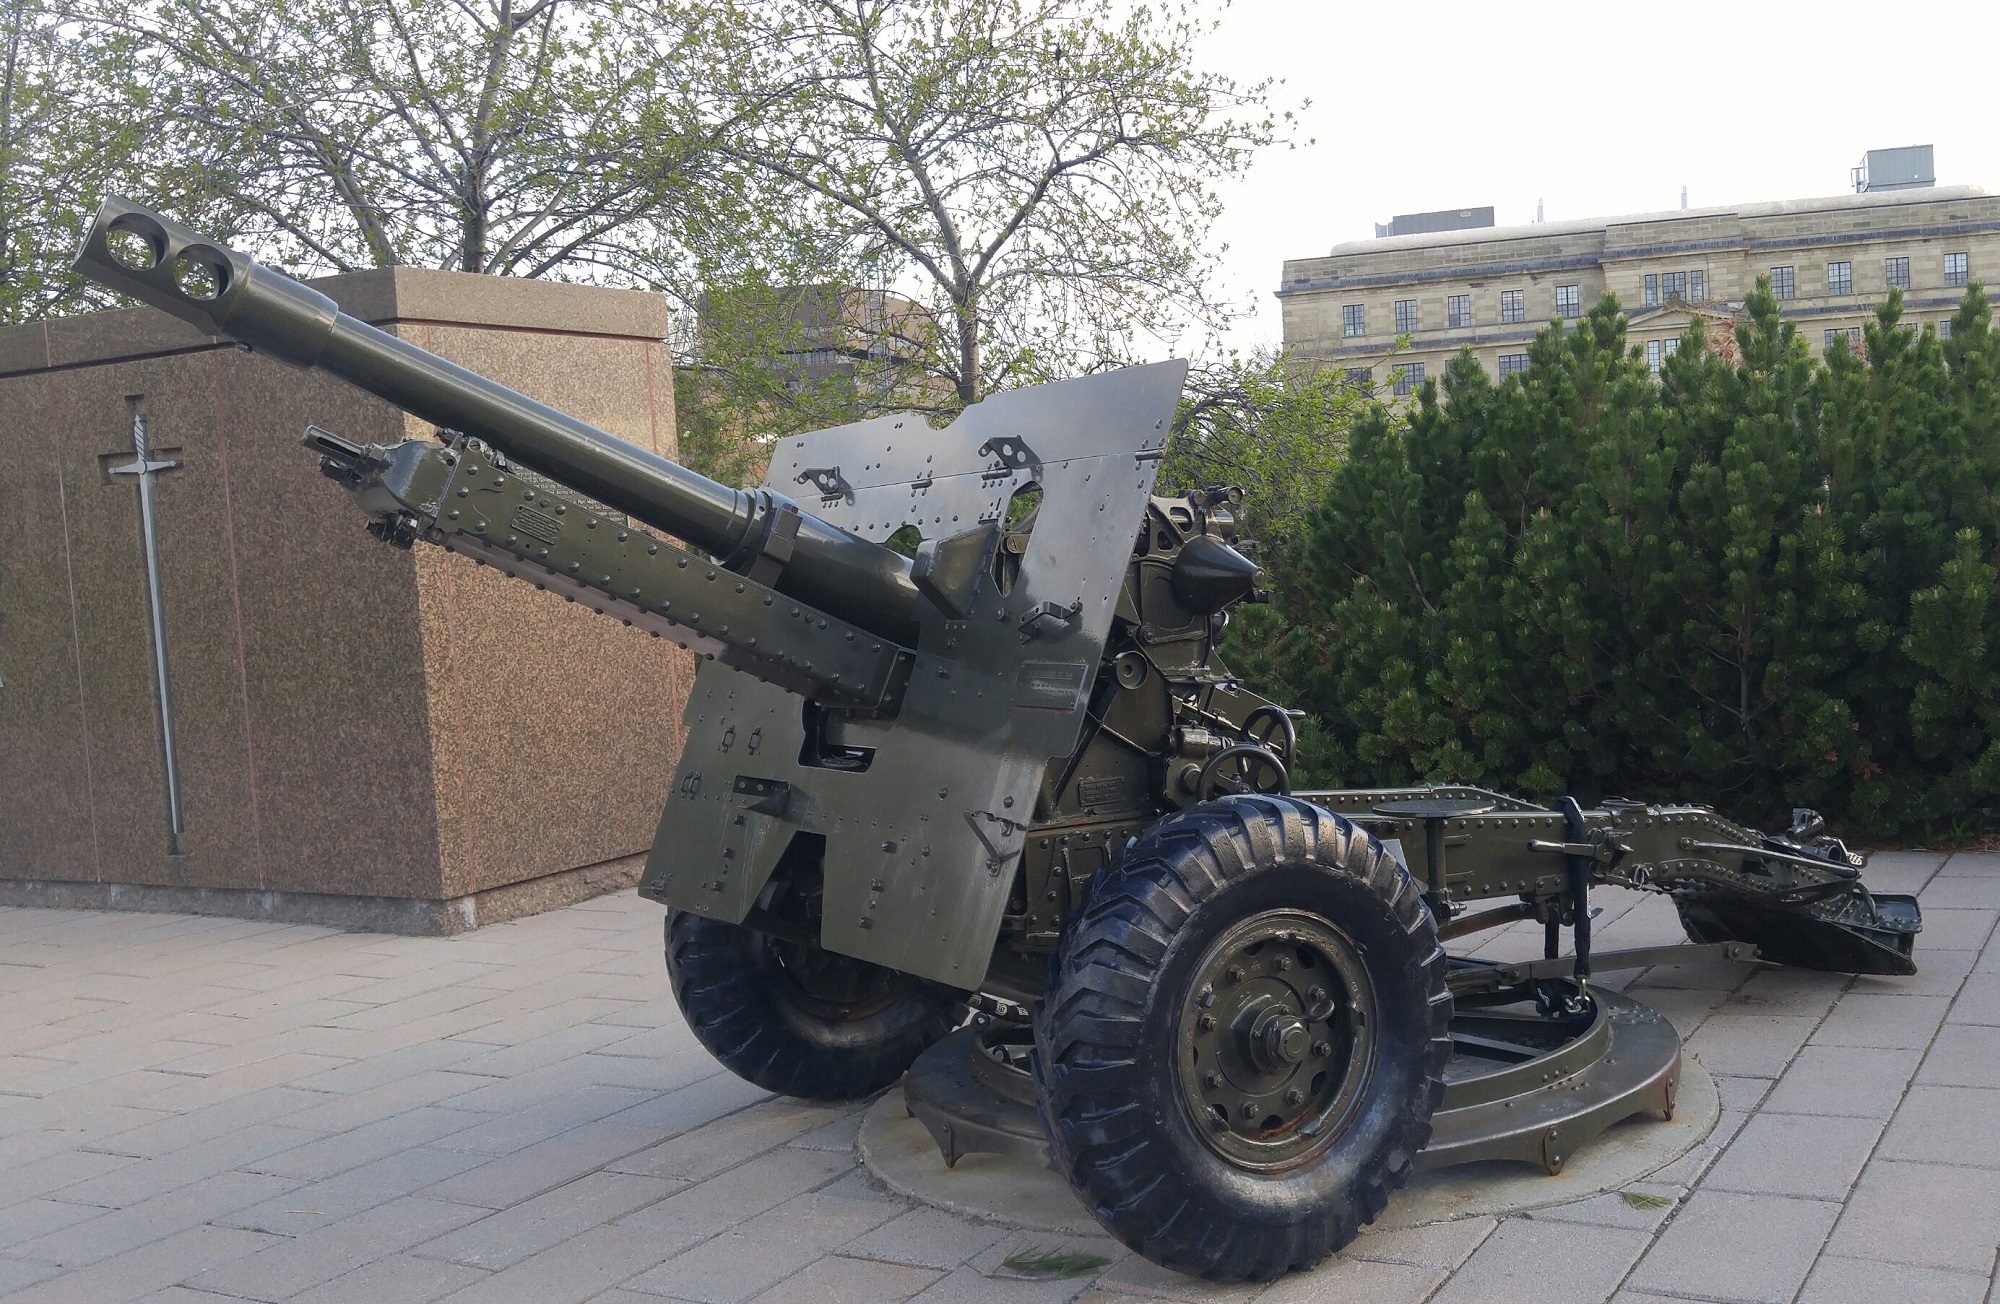 25 pounder artillery field gun